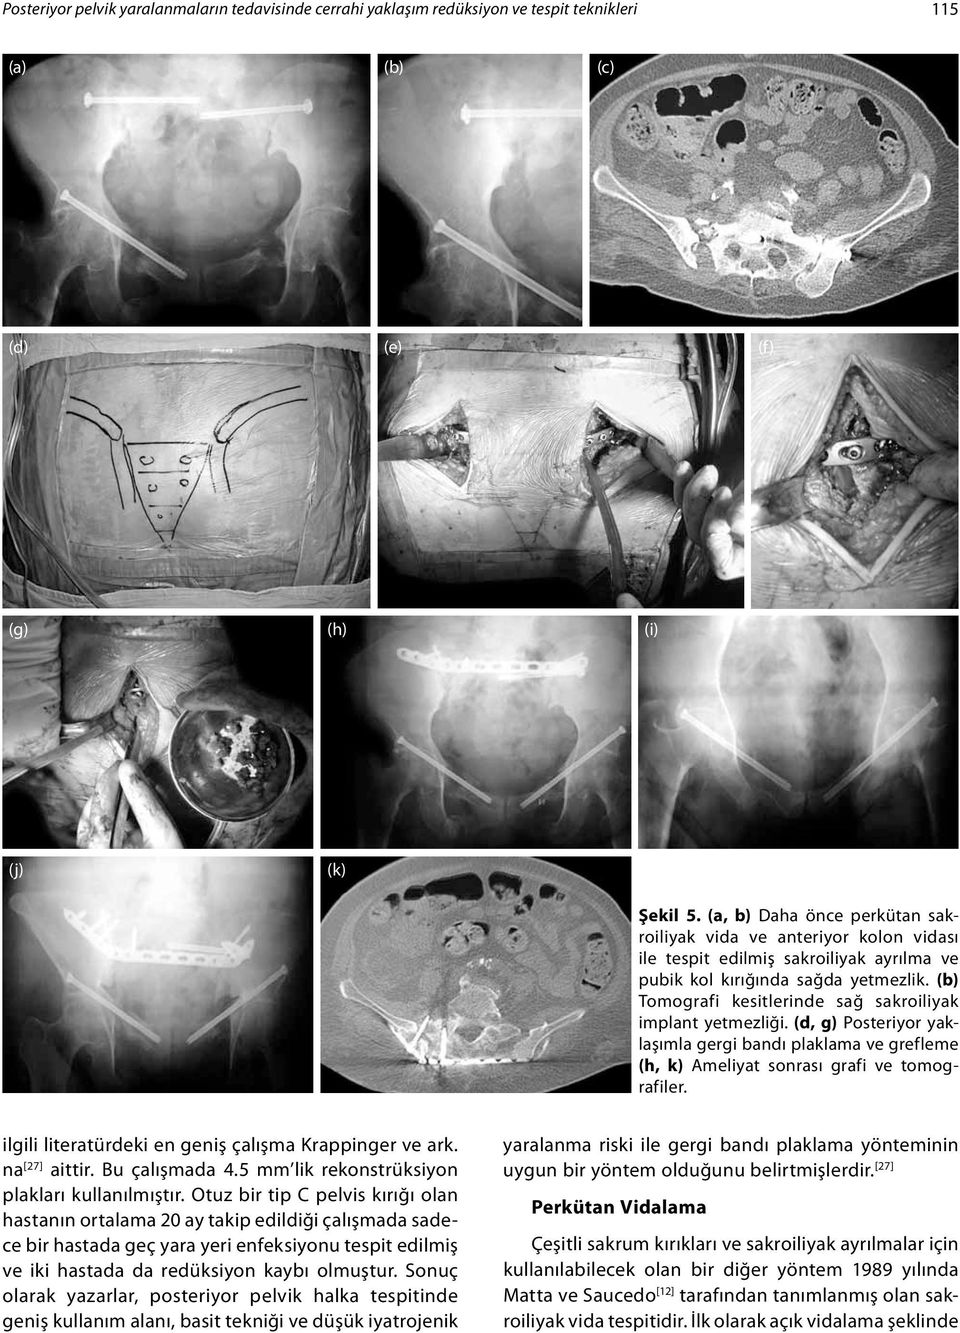 (b) Tomografi kesitlerinde sağ sakroiliyak implant yetmezliği. (d, g) Posteriyor yaklaşımla gergi bandı plaklama ve grefleme (h, k) Ameliyat sonrası grafi ve tomografiler.